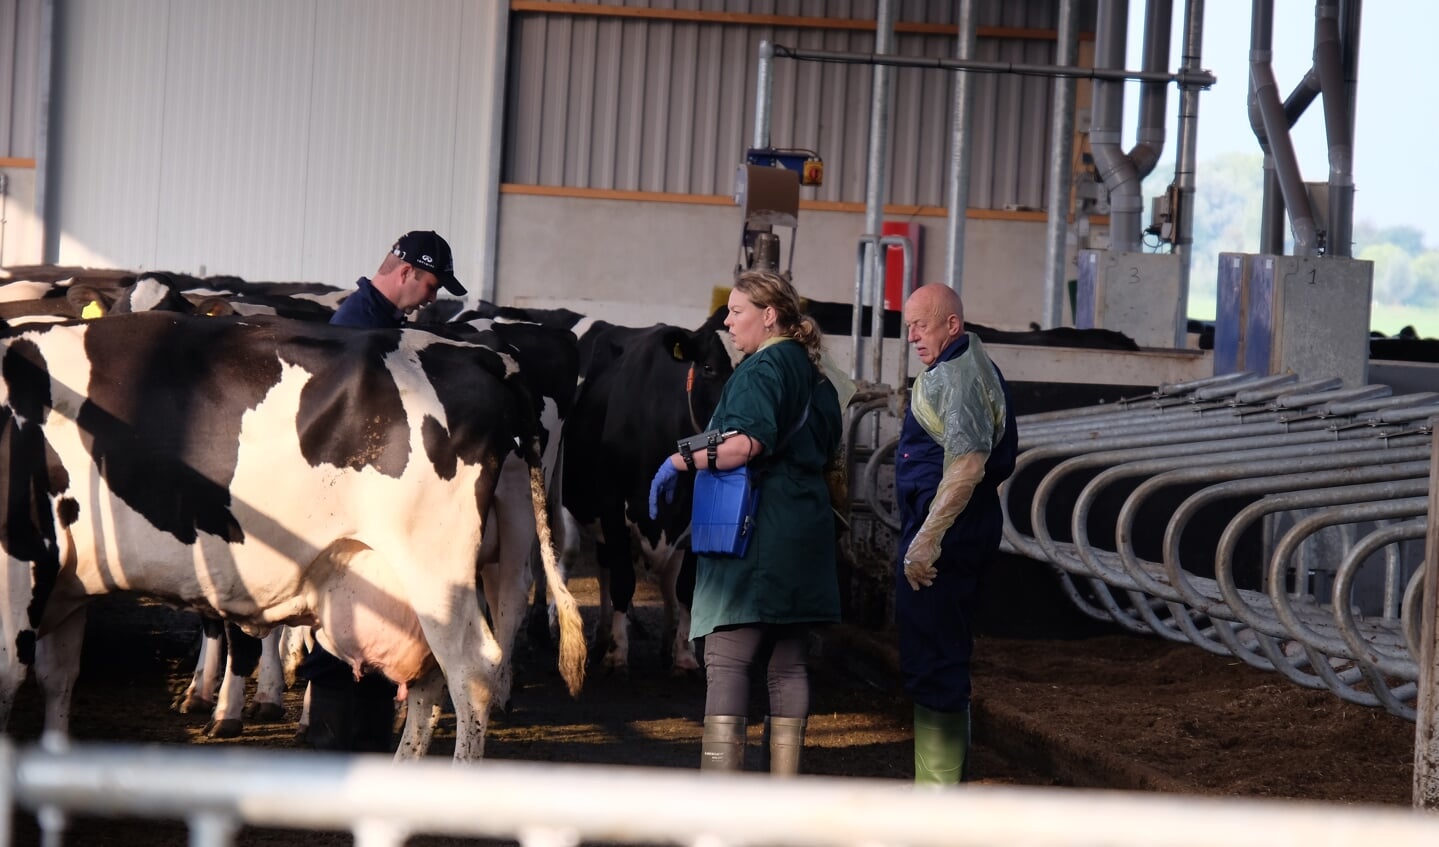 • Bezoek van Dr. Pol met dierenarts Barbara van Deuren aan veehouder Peter Kloek uit Meerkerk voor de drachtcontrole van verschillende koeien. 